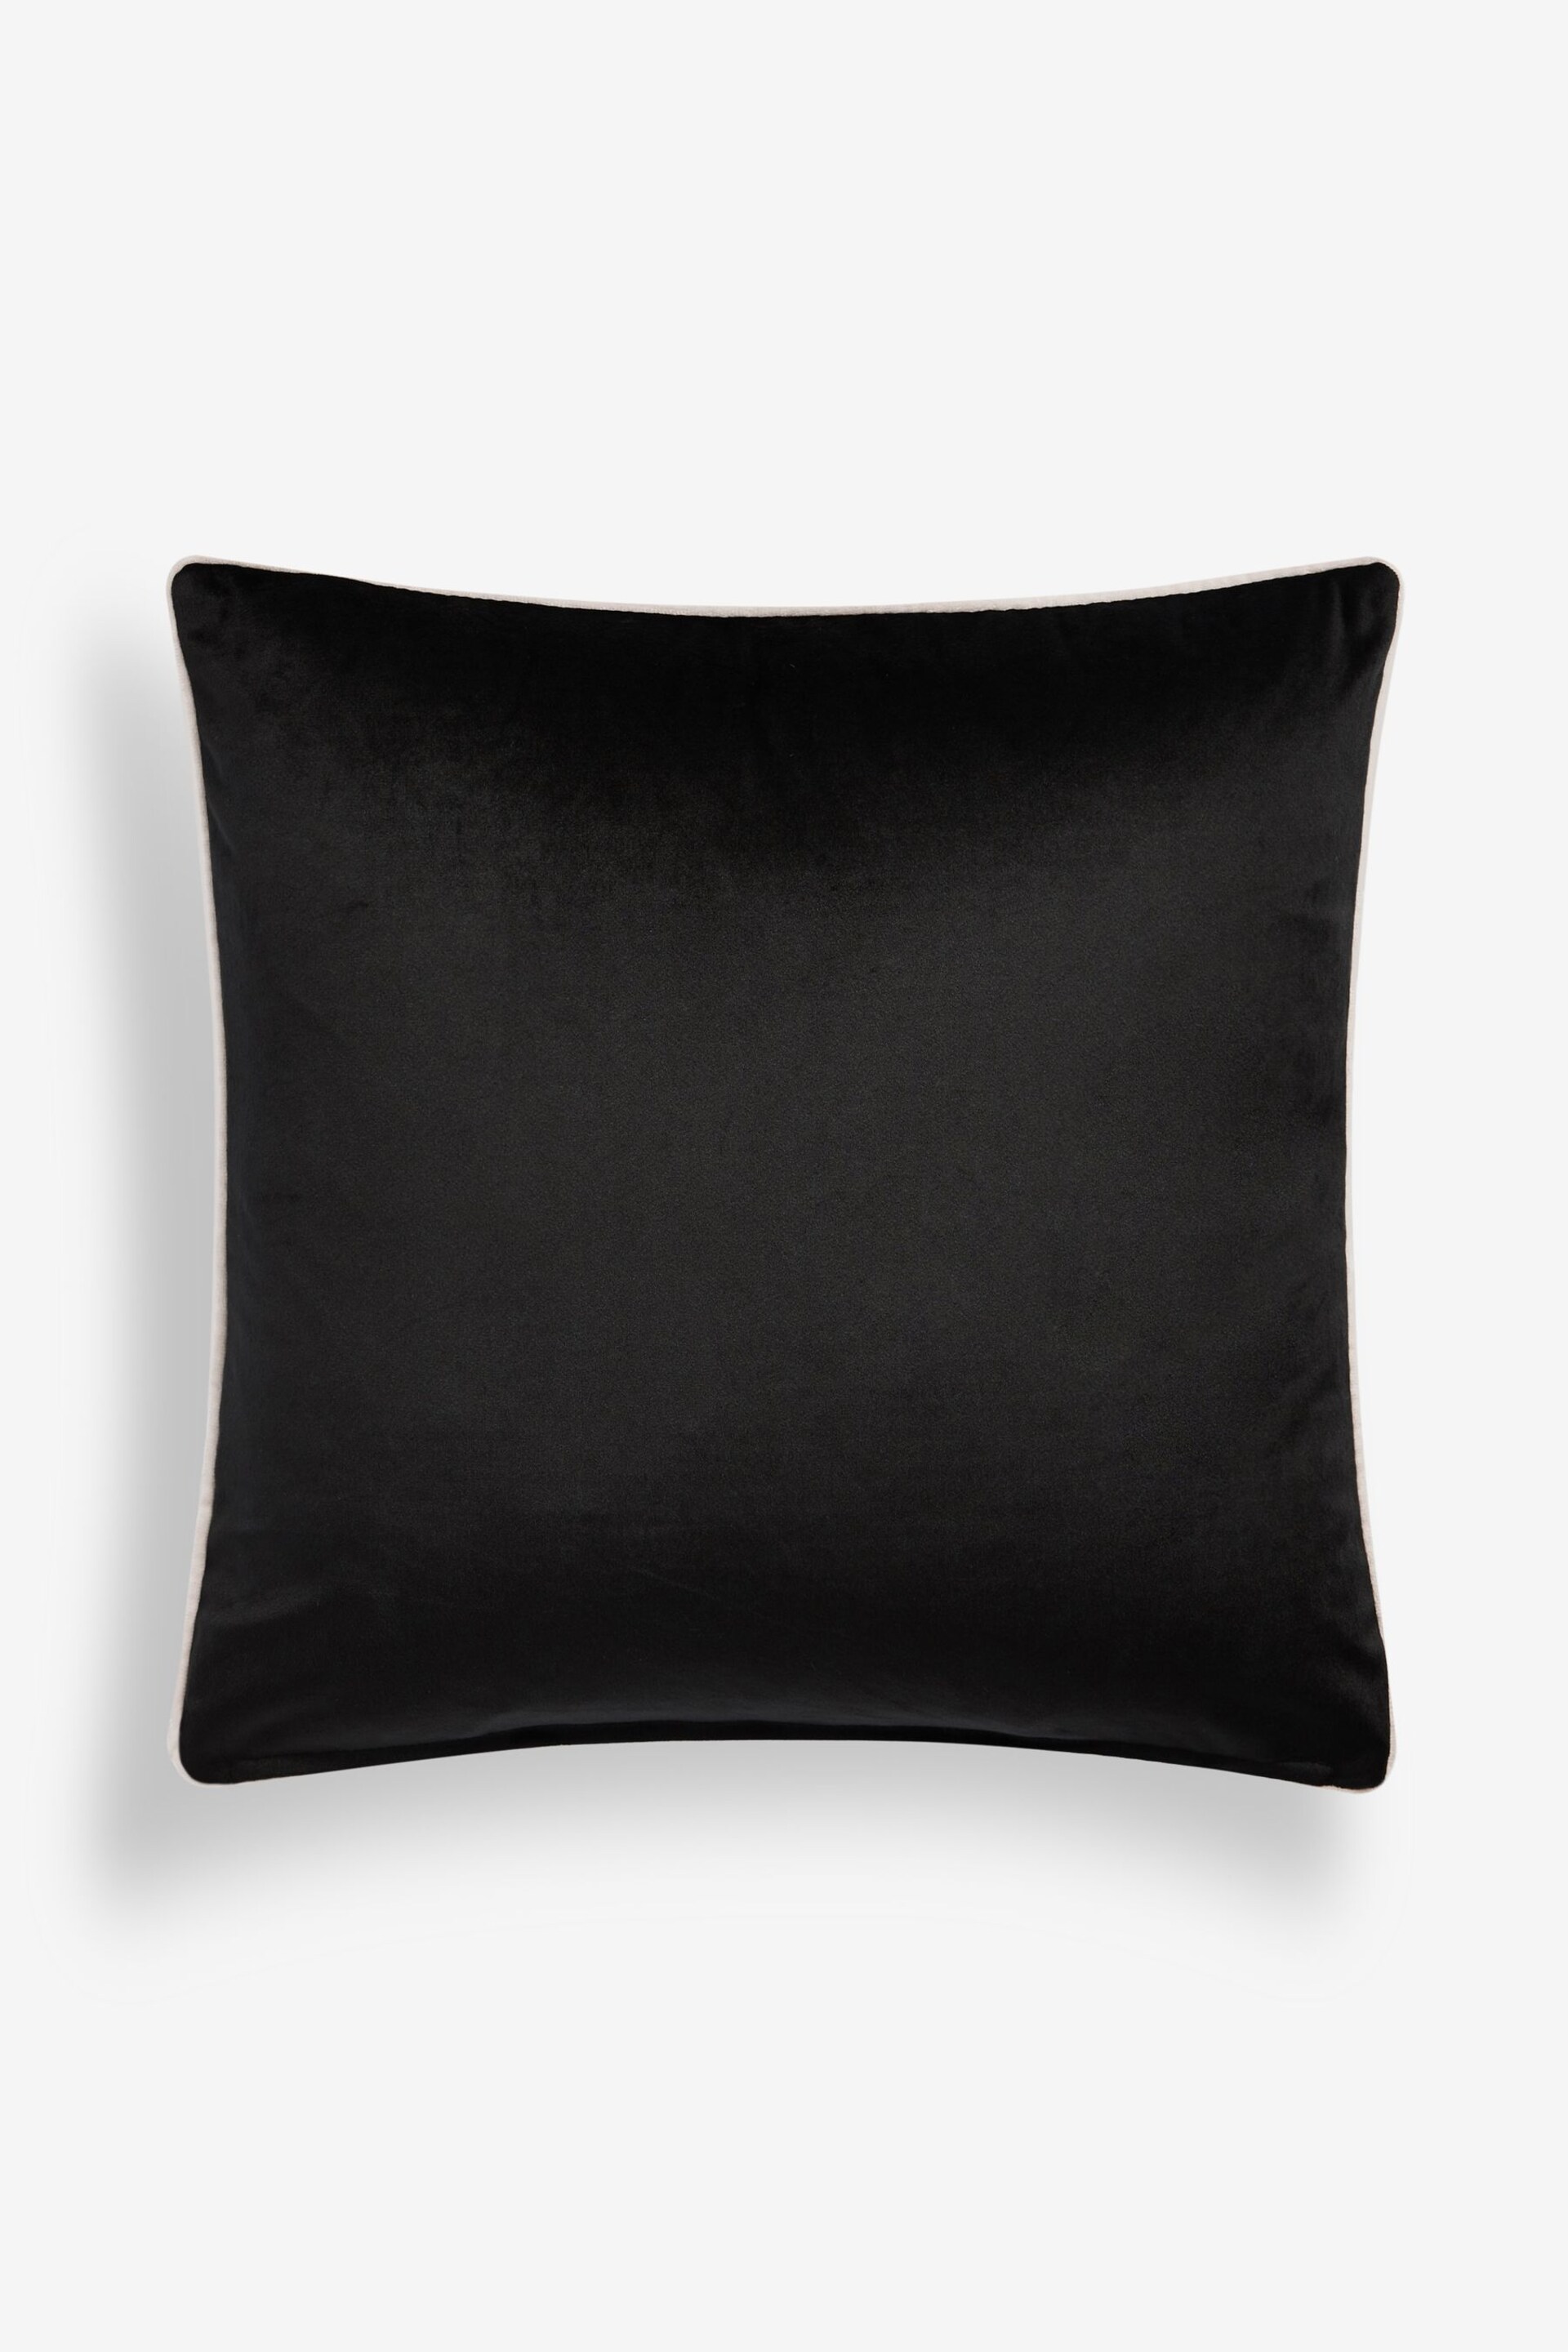 Black 50 x 50cm Matte Velvet Contrast Pipe Cushion - Image 3 of 5